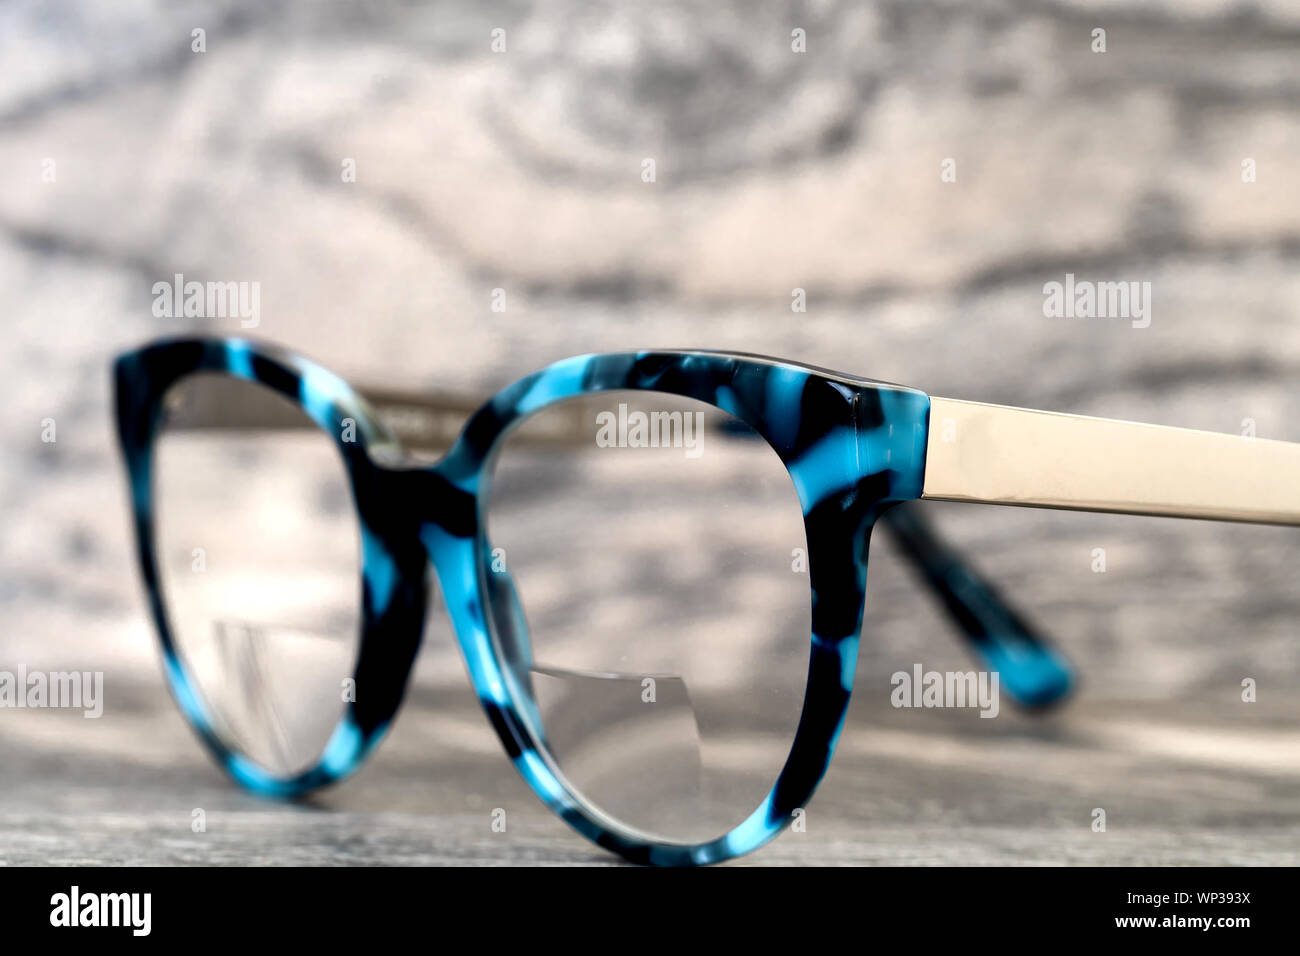 Gafas gafas lentes bifocales y marco azul negro estilo vintage de moda fondo de escritorio de madera rústica, sigue el estilo de Fotografía de stock - Alamy